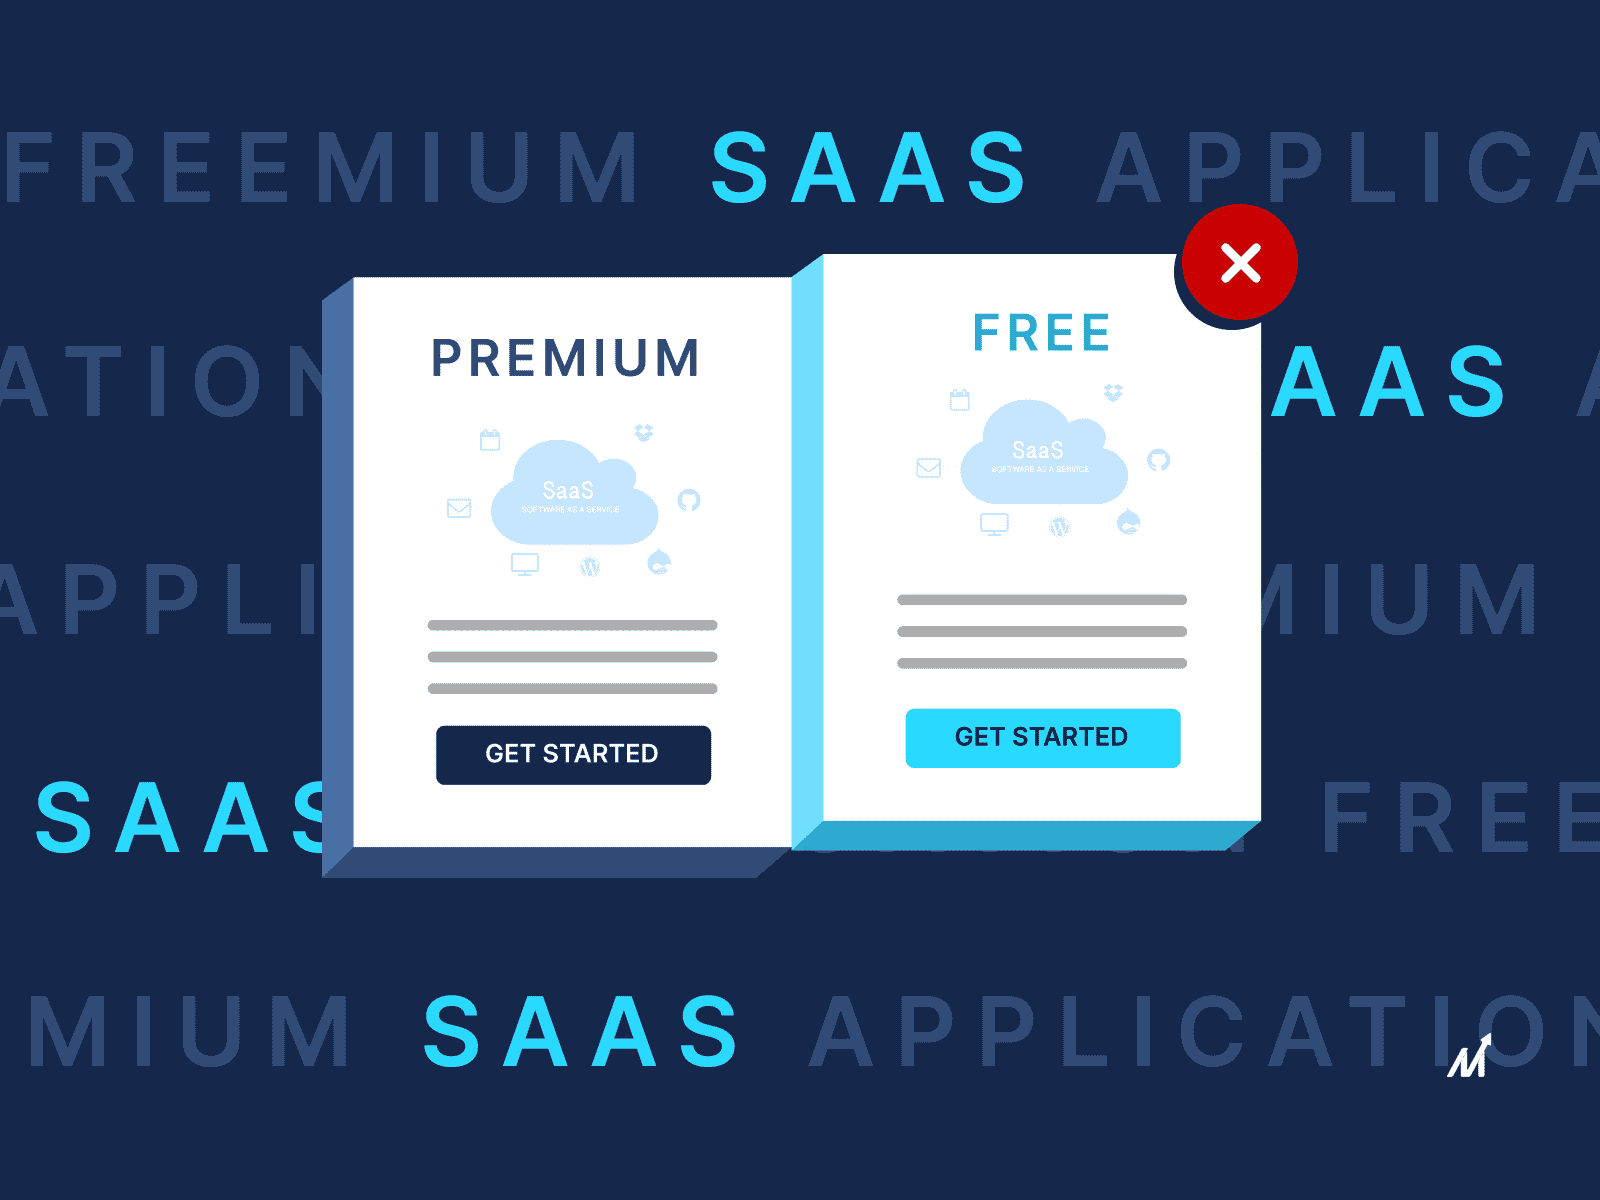 Freemium SaaS Application